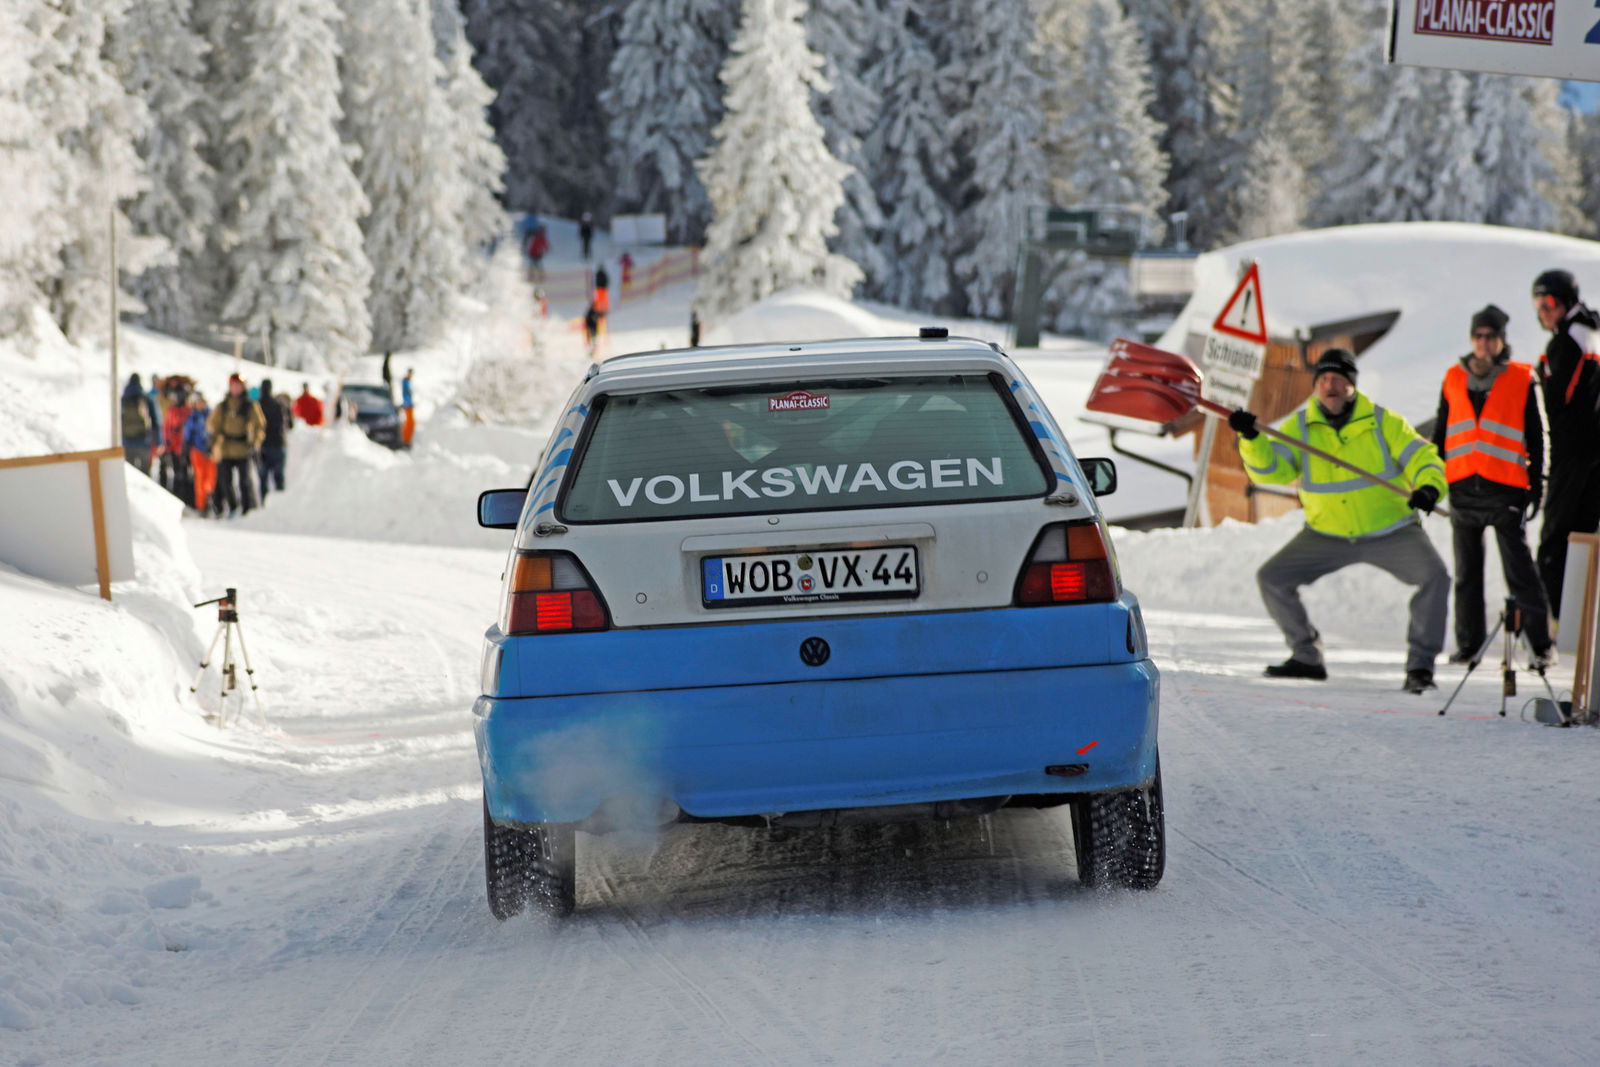 Rennlegende „Striezel“ Stuck im historischen Rallye-Golf bei der Winterrallye Planai-Classic